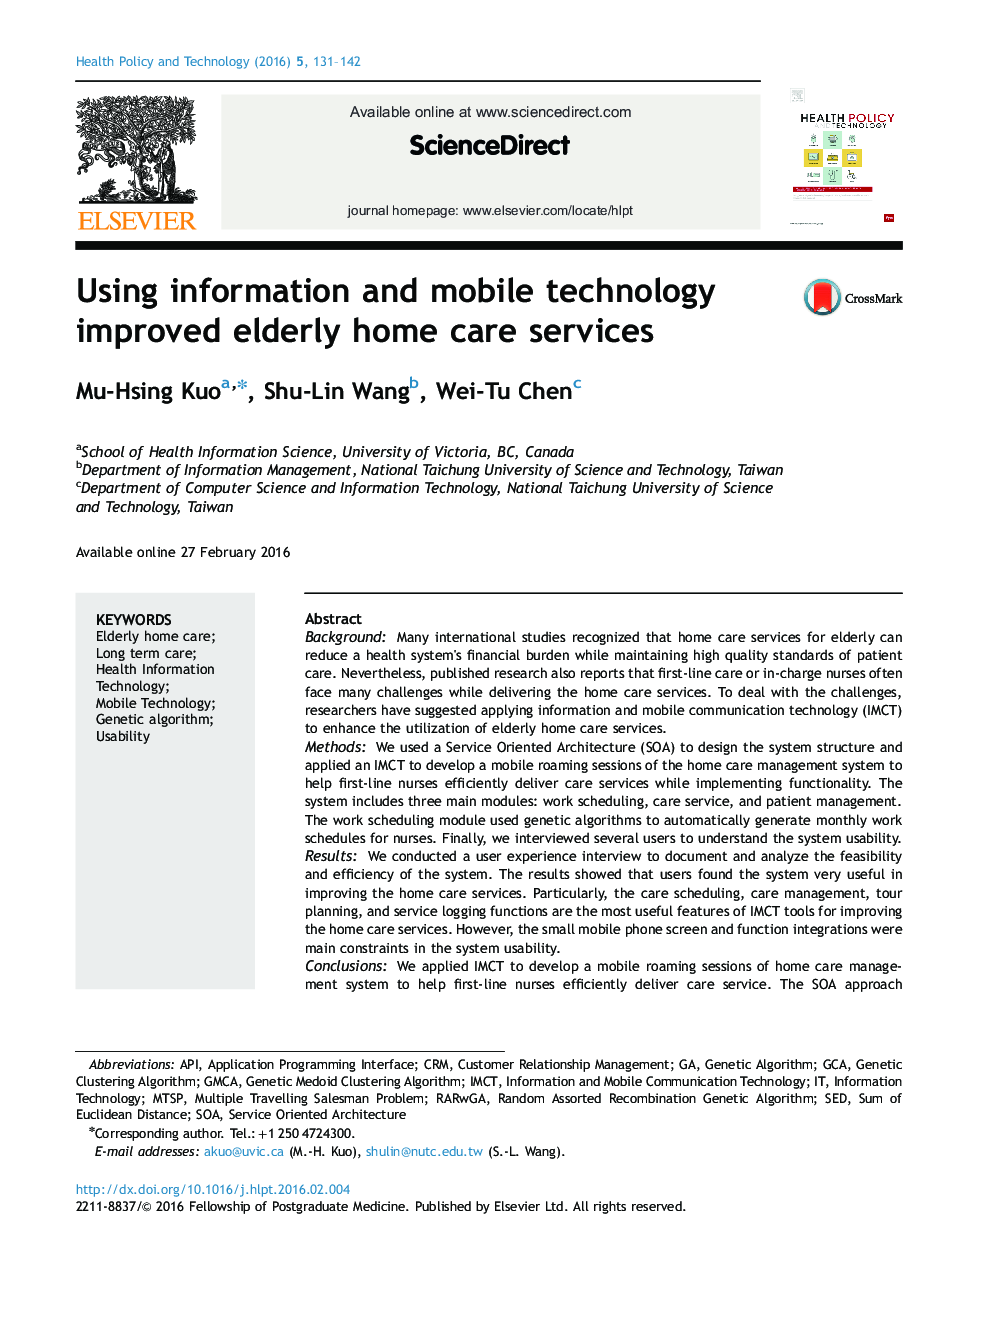 استفاده از فناوری اطلاعات و تلفن همراه برای بهبود خدمات مراقبت از سالمندان در منزل 